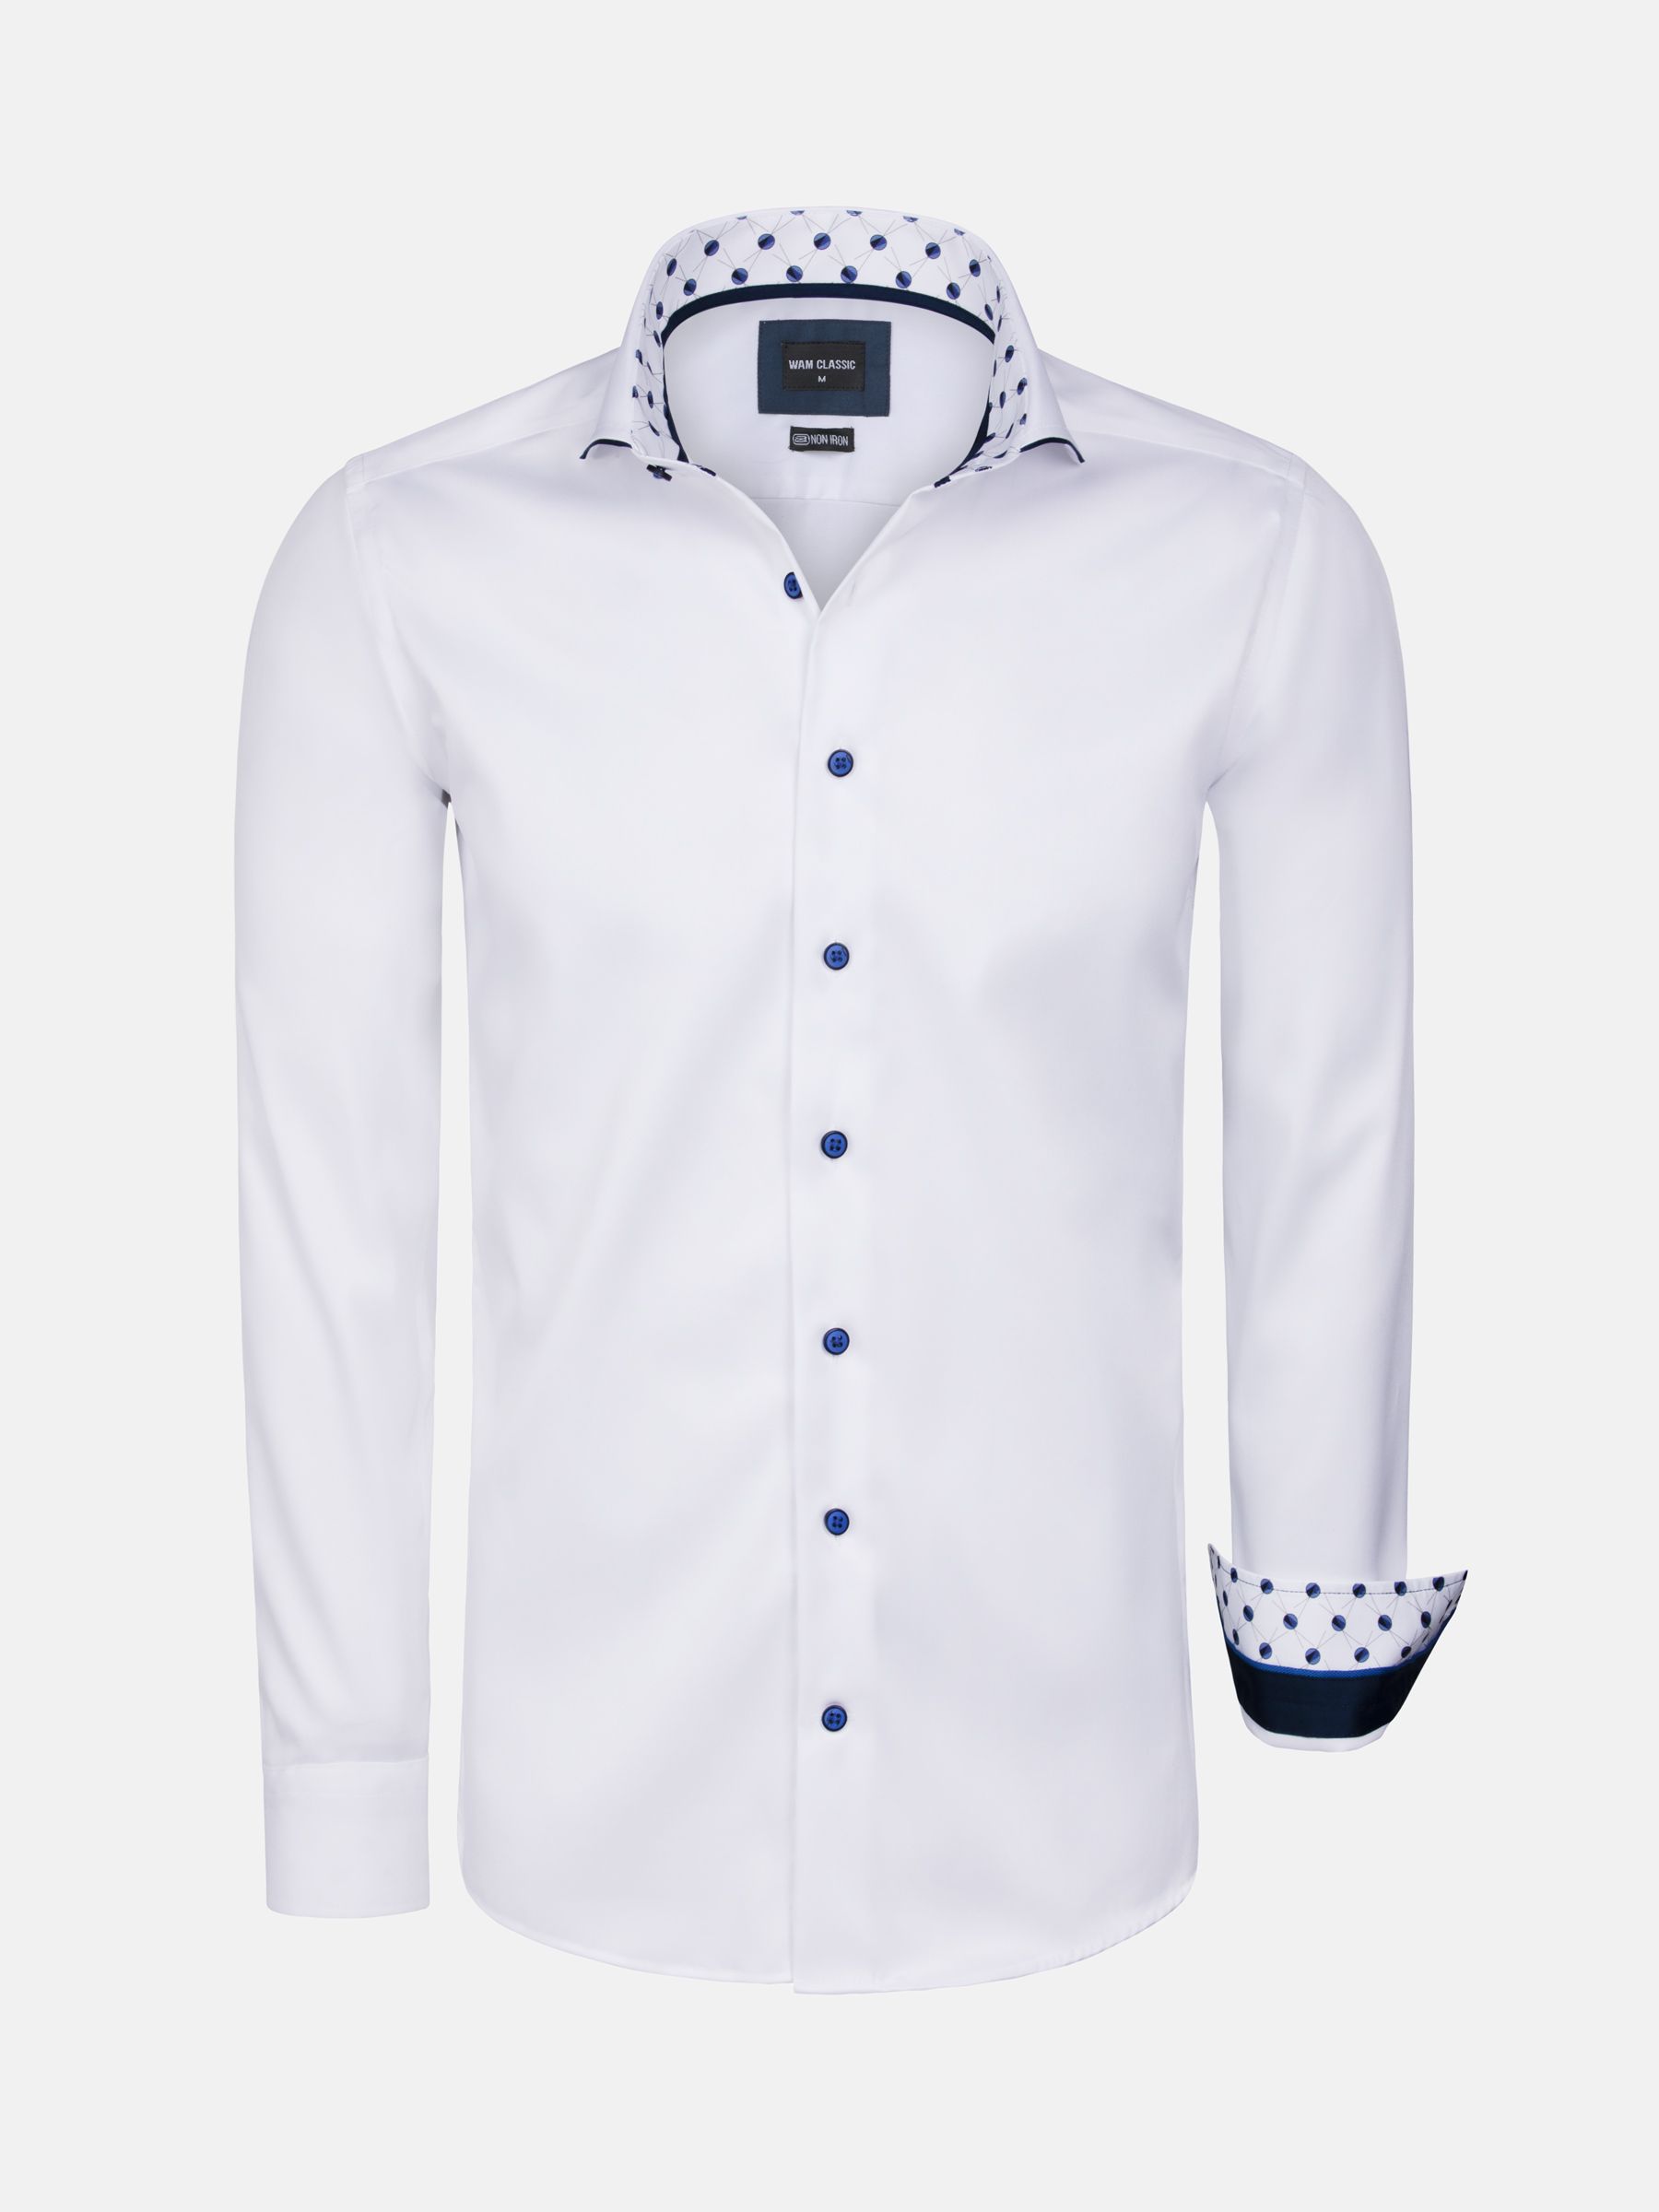 campus Oppositie Handvest Wit Overhemd met Lange Mouwen-Effen mannenhemd|WAM DENIM